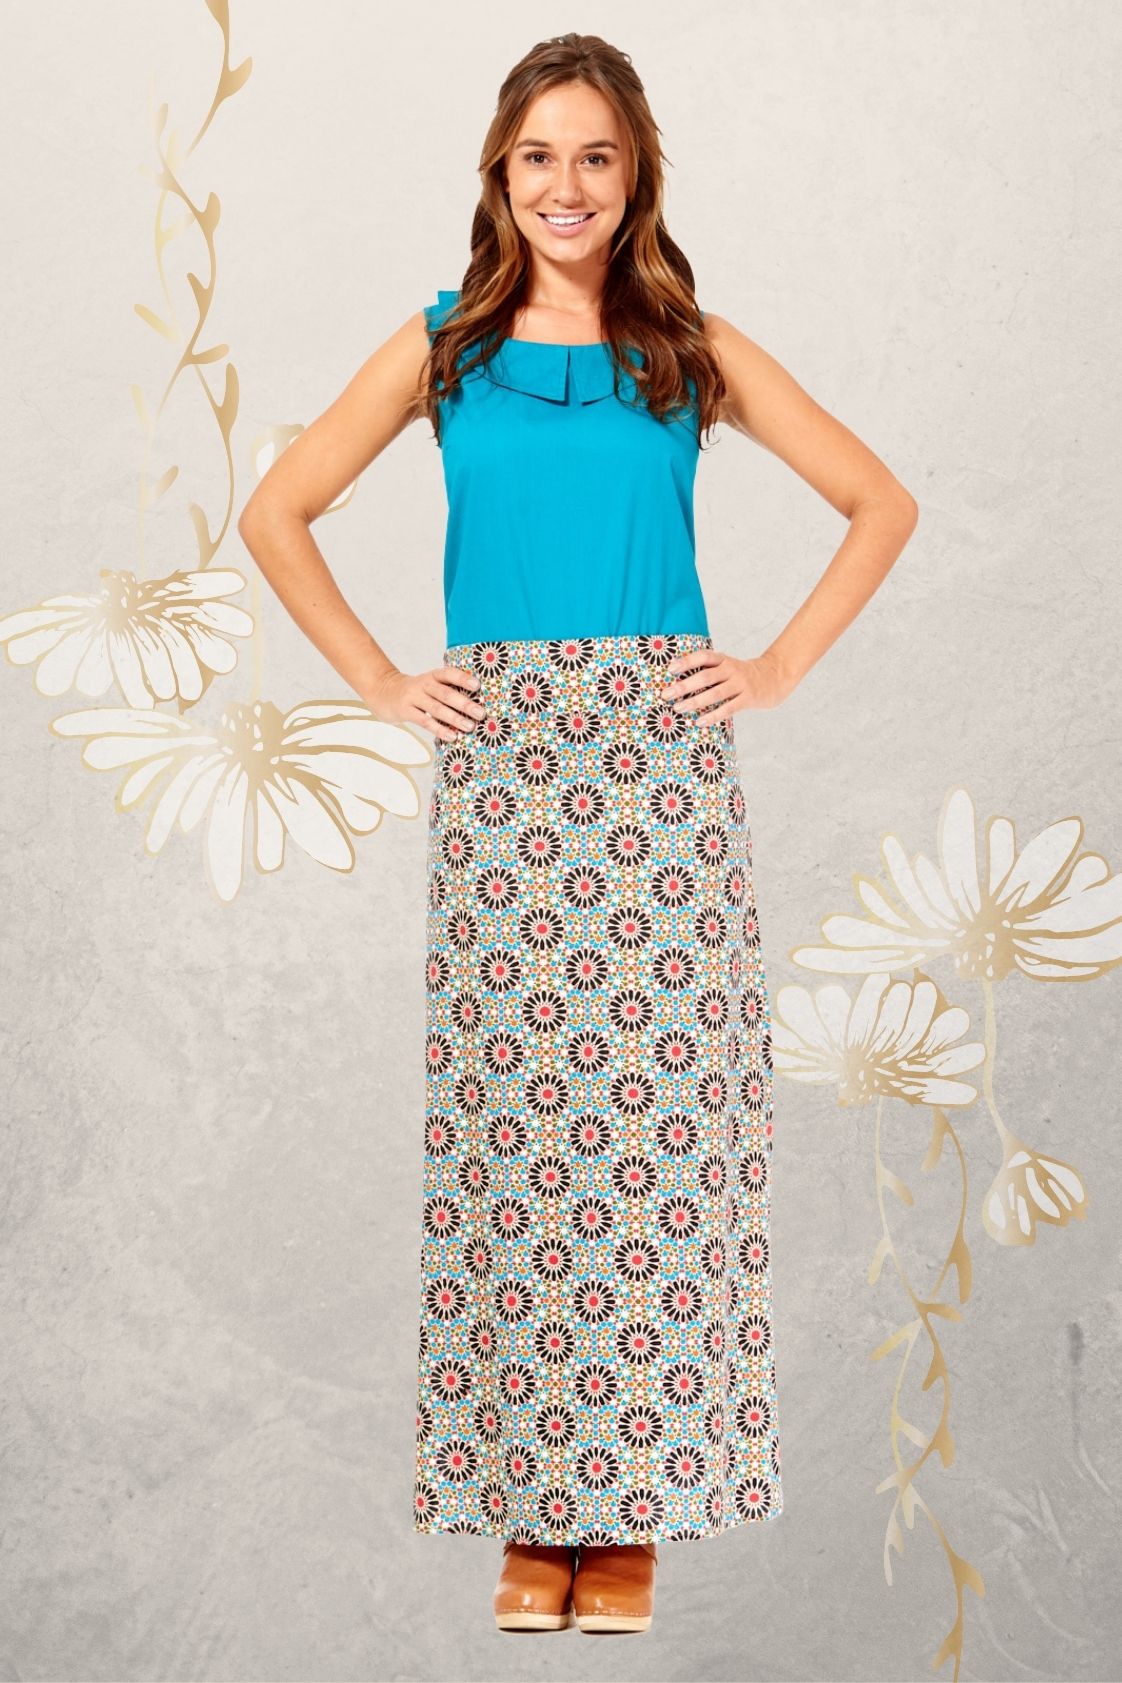 Sasha Maxi Skirt - Morocco Print